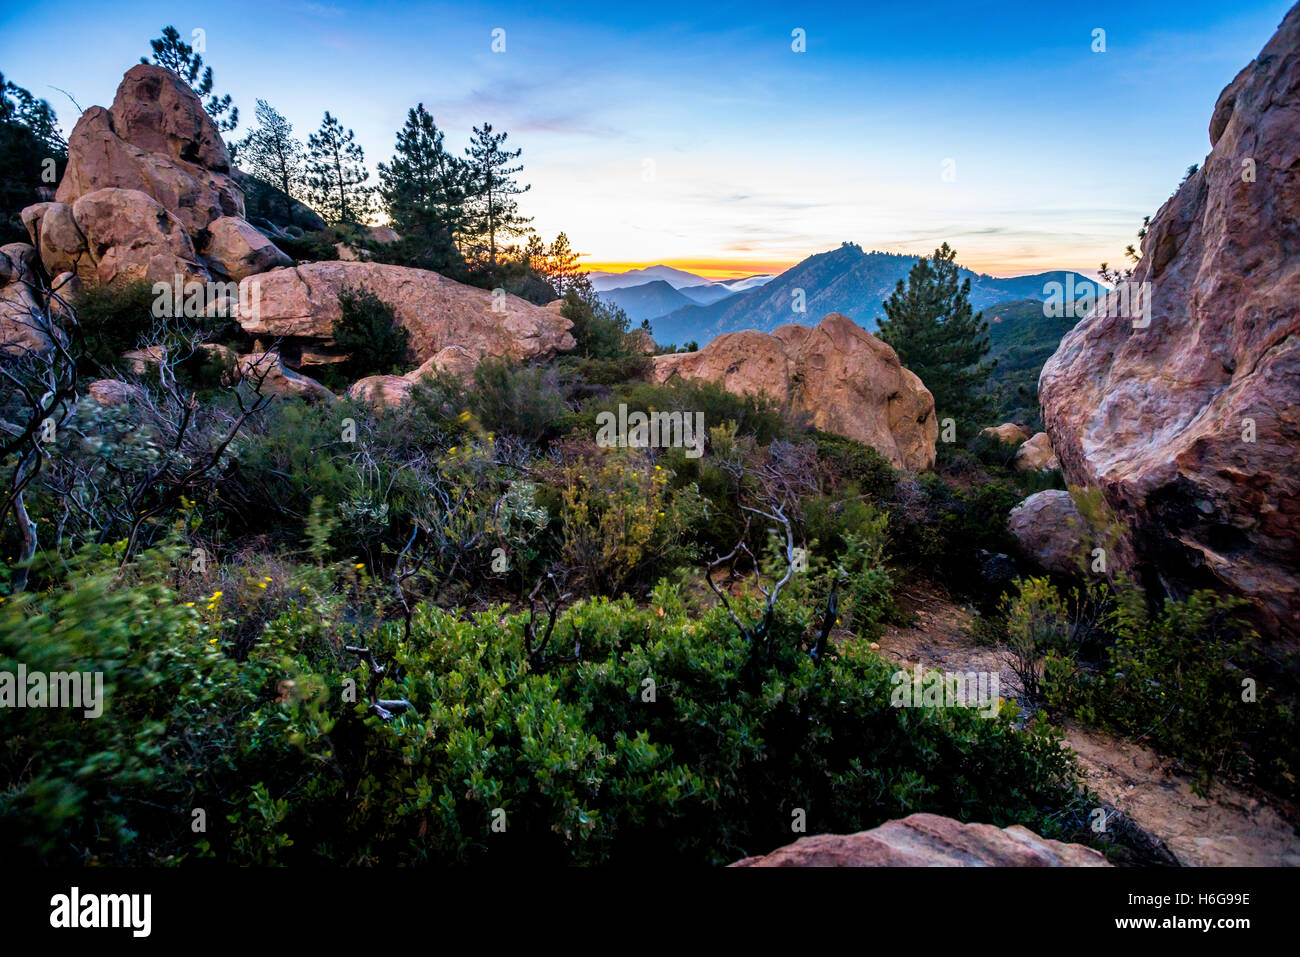 Certains des nombreux rochers dans le jardin de Santa Barbara en Californie, au coucher du soleil. Banque D'Images